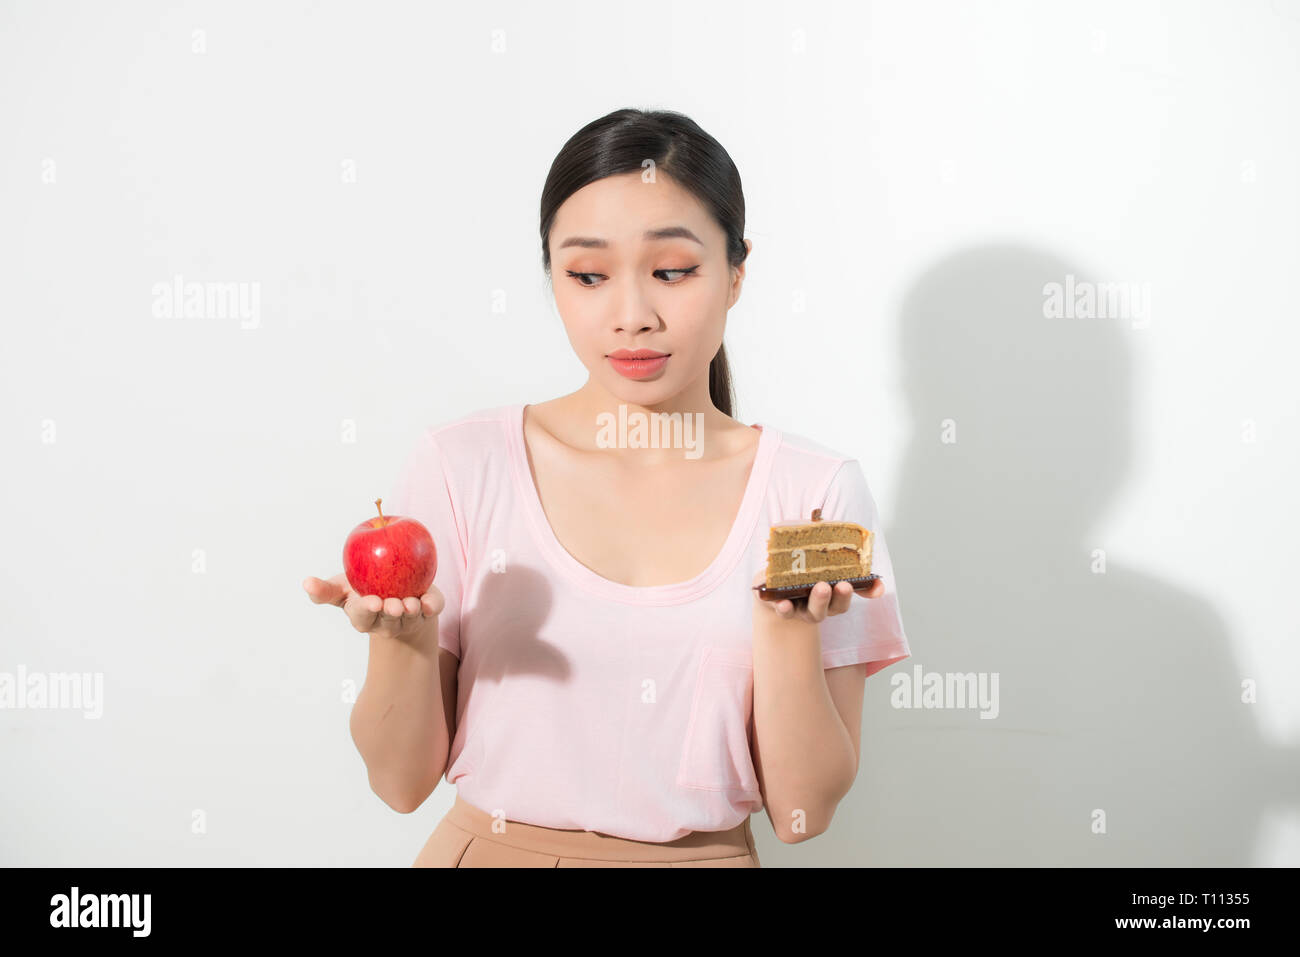 La donna tiene in mano la torta dolce e frutta apple scegliendo, cercando di resistere alla tentazione di fare la giusta scelta della dieta. Perdita di peso la dieta dilemma golosità Foto Stock